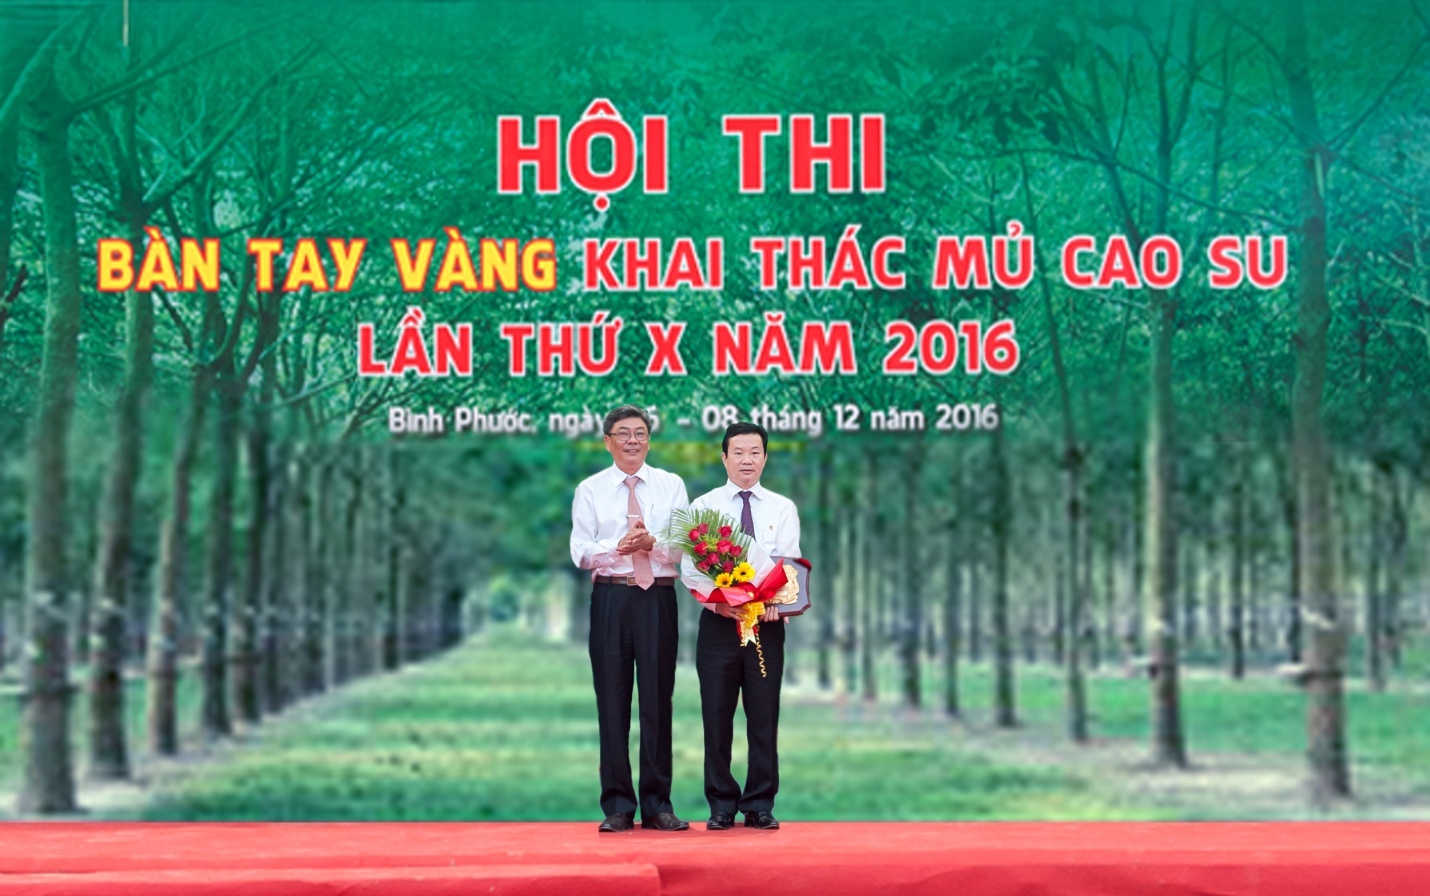 Tổng công ty Sông Gianh - Nhà tài trợ vàng Hội thi bàn tay vàng khai thác mủ Tập đoàn công nghiệp cao su Việt Nam